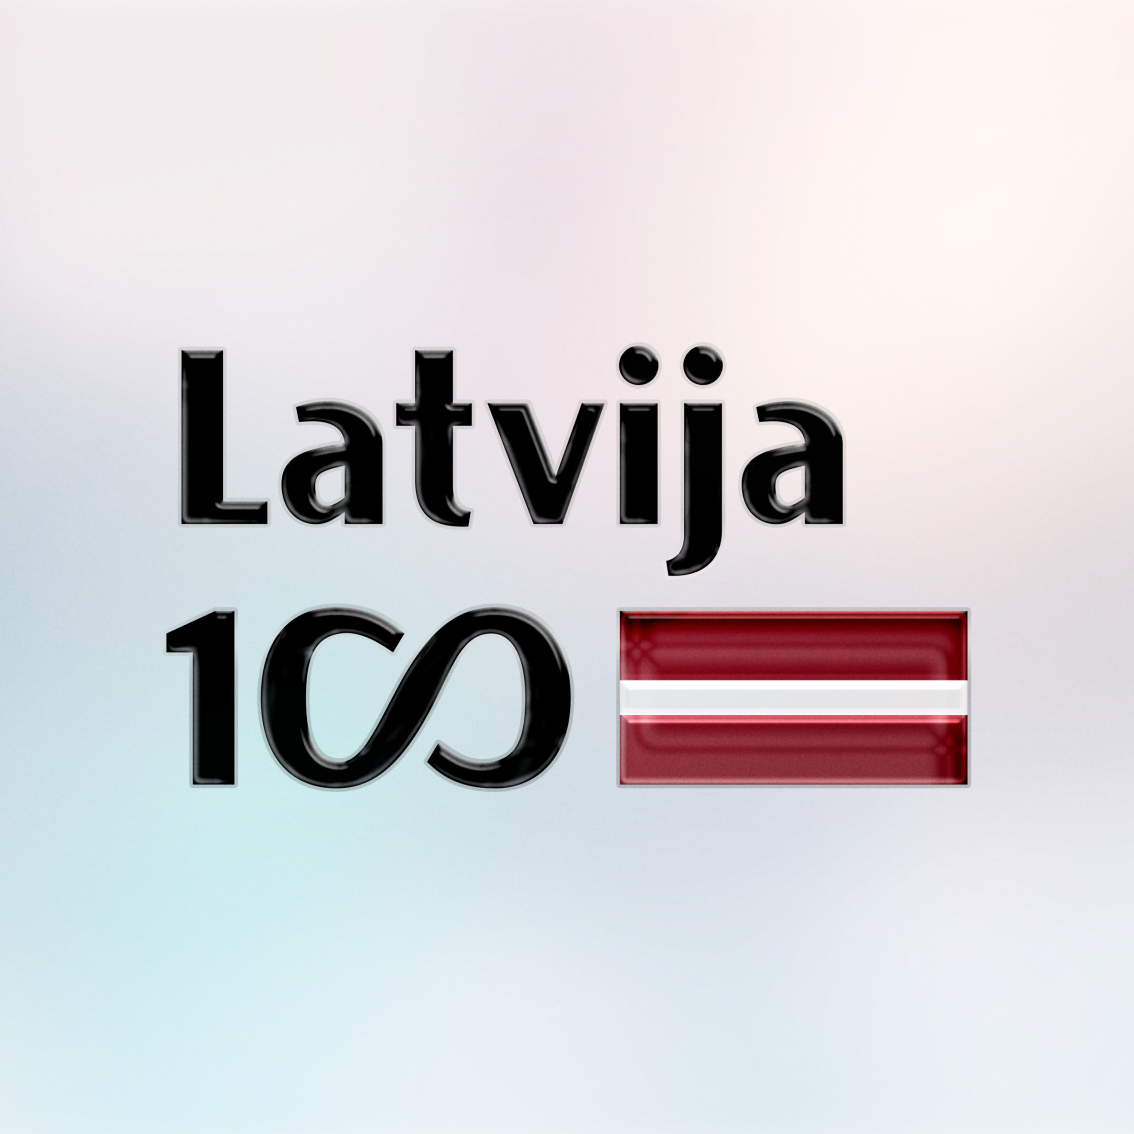 attēla pamatfons ir vieglos pasteļtoņos uz kura attēlota UV DTF uzlīme ar lakas pārklājumu. Uzlīmei ir redzams lakas reljefs. Uzlīme ir karoga formā ar Latvijas karoga krāsām. Uzraksts melnā krāsā Latvija. Apakšējā rindā 100 gades simbolika ar nelielu arodziņu.